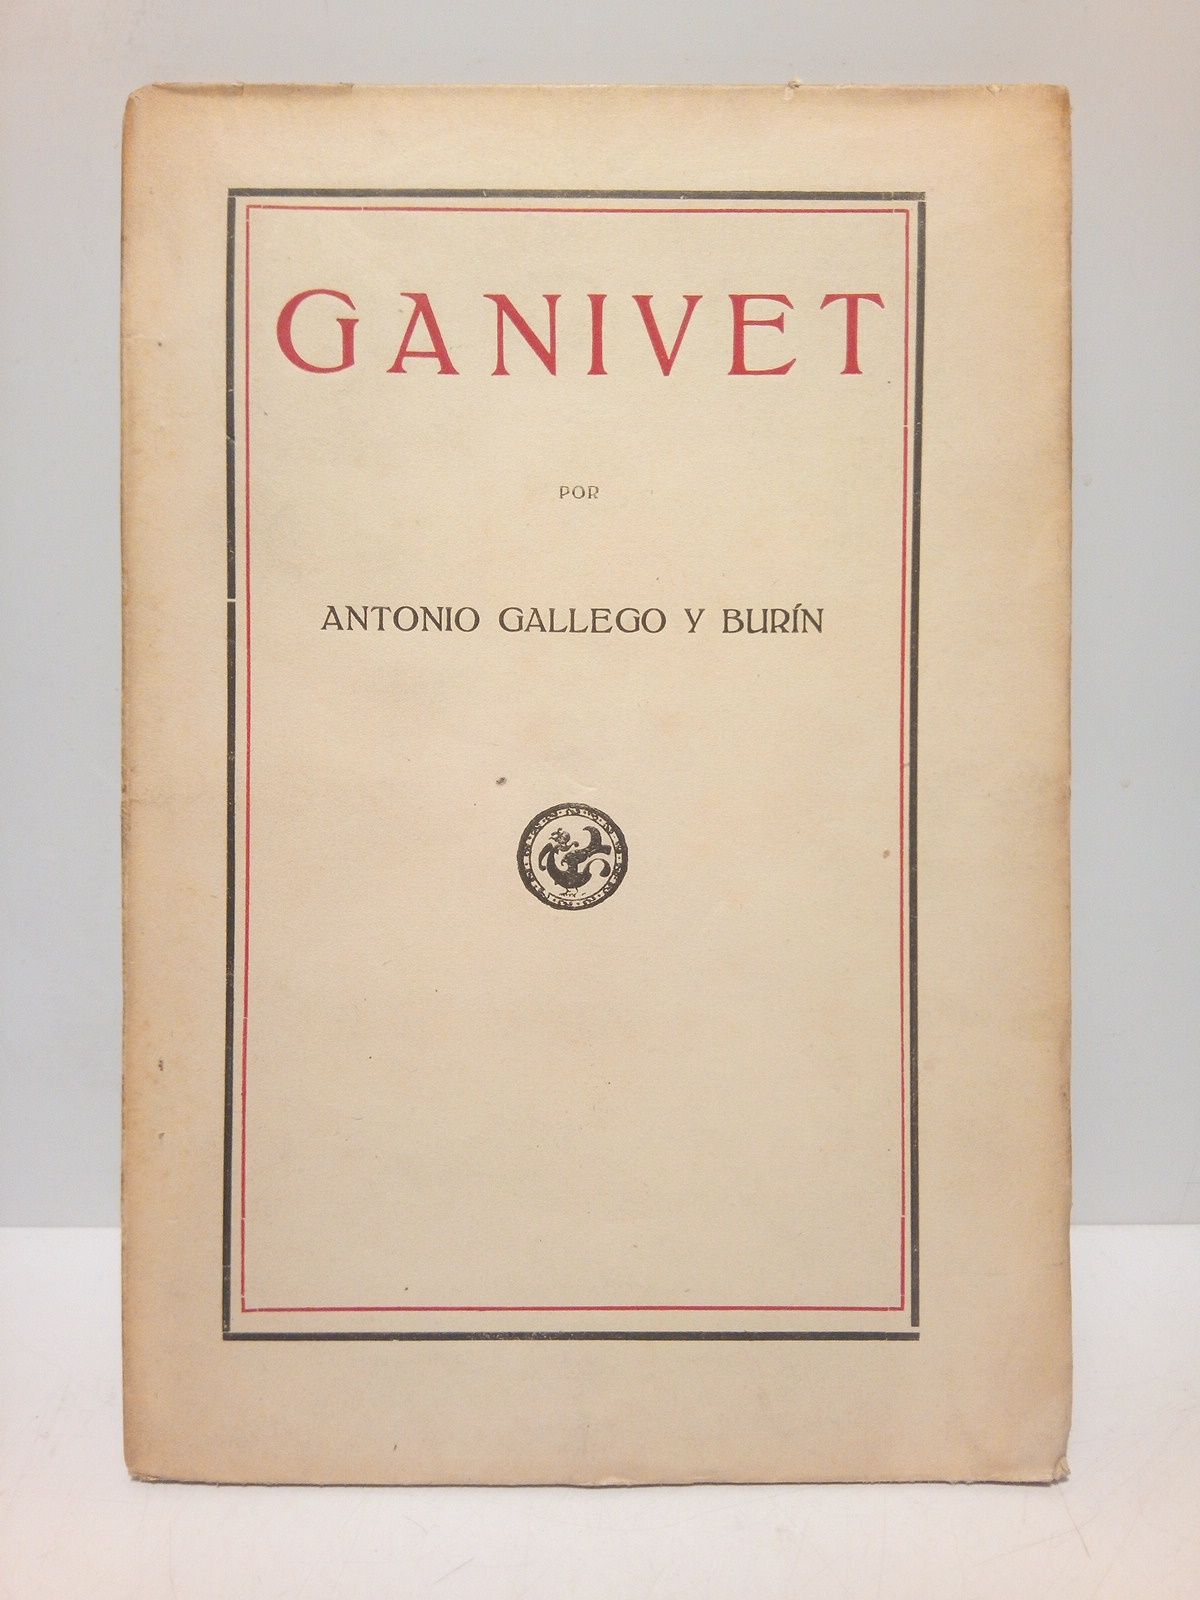 GALLEGO Y BURIN, Antonio - Ganivet /  Lectura dada en el Centro Artstico de Granada la noche del 22 de marzo de 1921 por Antonio Gallego Burn